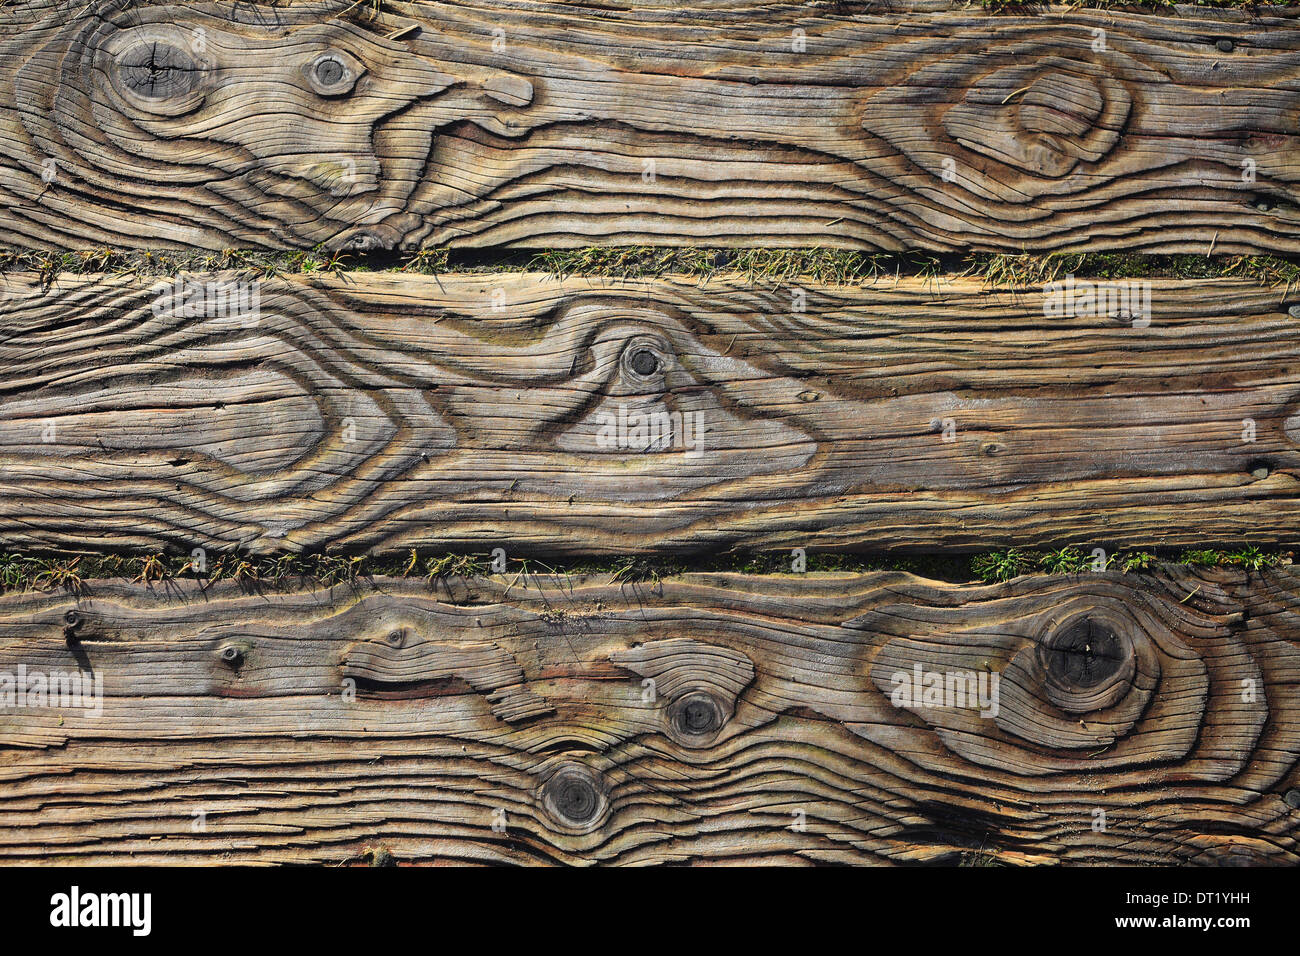 El patrón de grano en los tablones de madera de un paseo. Foto de stock